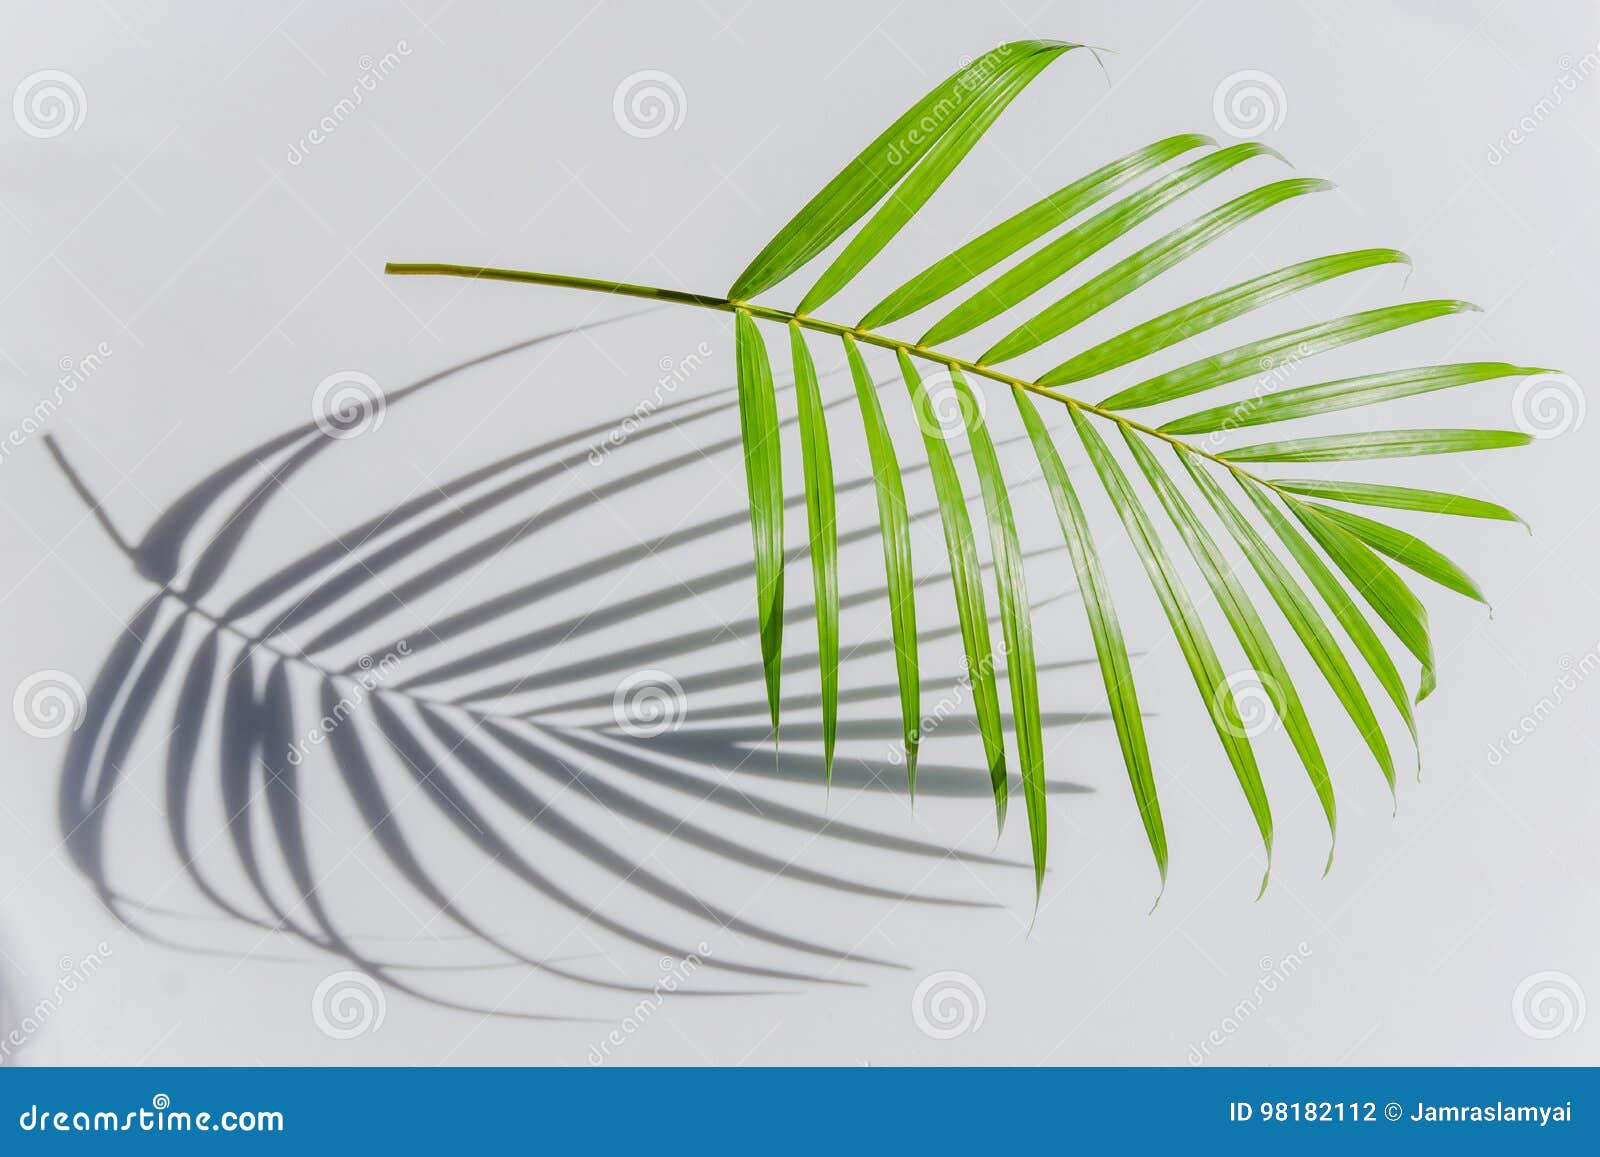 Folha de palmeira e sombras em uma parede branca. Feche acima da folha de palmeira e das sombras em uma parede branca